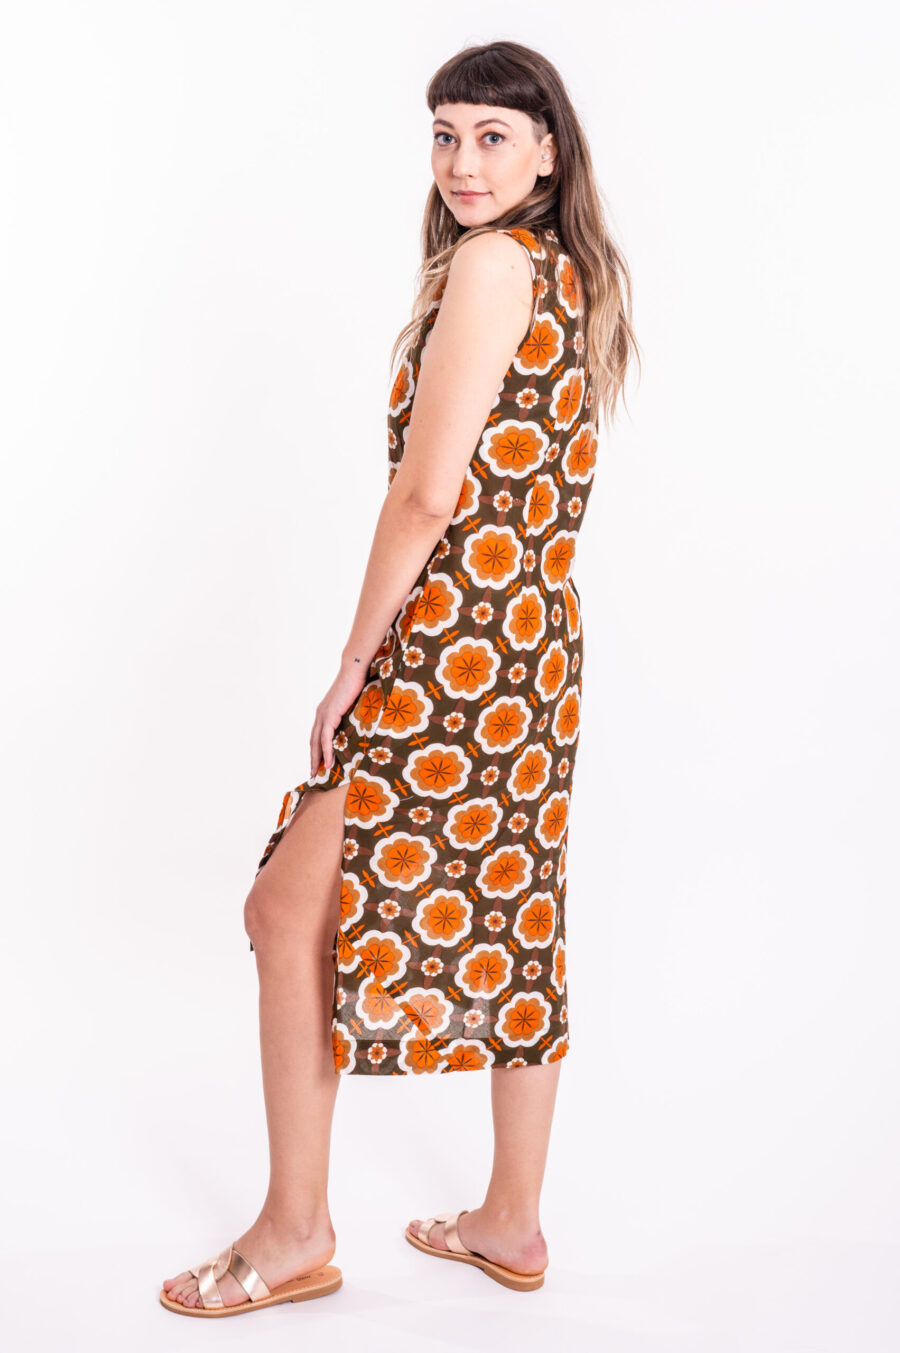 Paris Dress | Uniquely designed dress – Tank top dress with gorgeous retro print